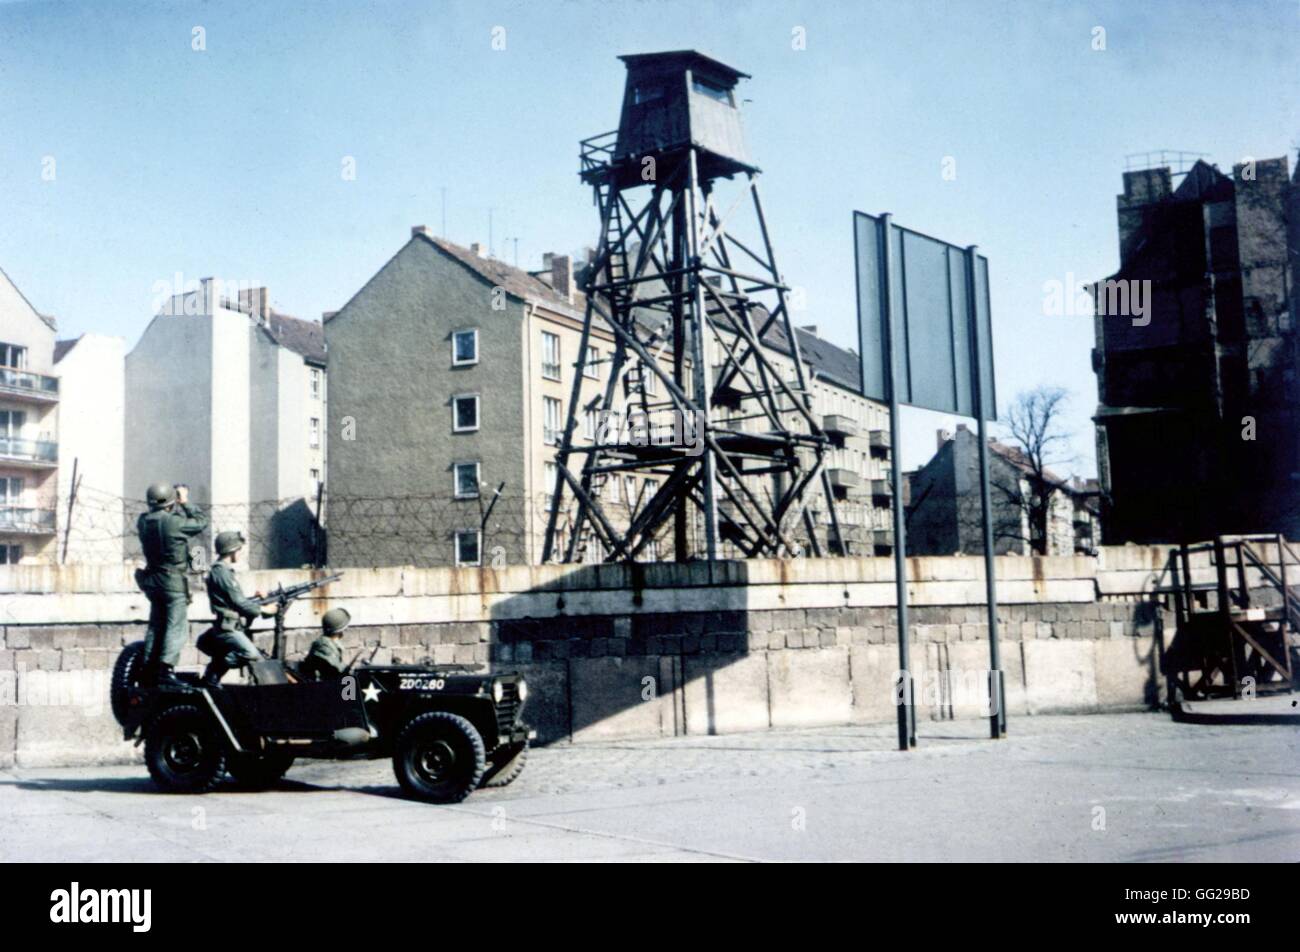 L'ouest de Berlin. Les soldats américains patrouillent devant le mur de Berlin c. Allemagne 1965-1970 (F.R.G.) de Washington. Bibliothèque du Congrès Banque D'Images